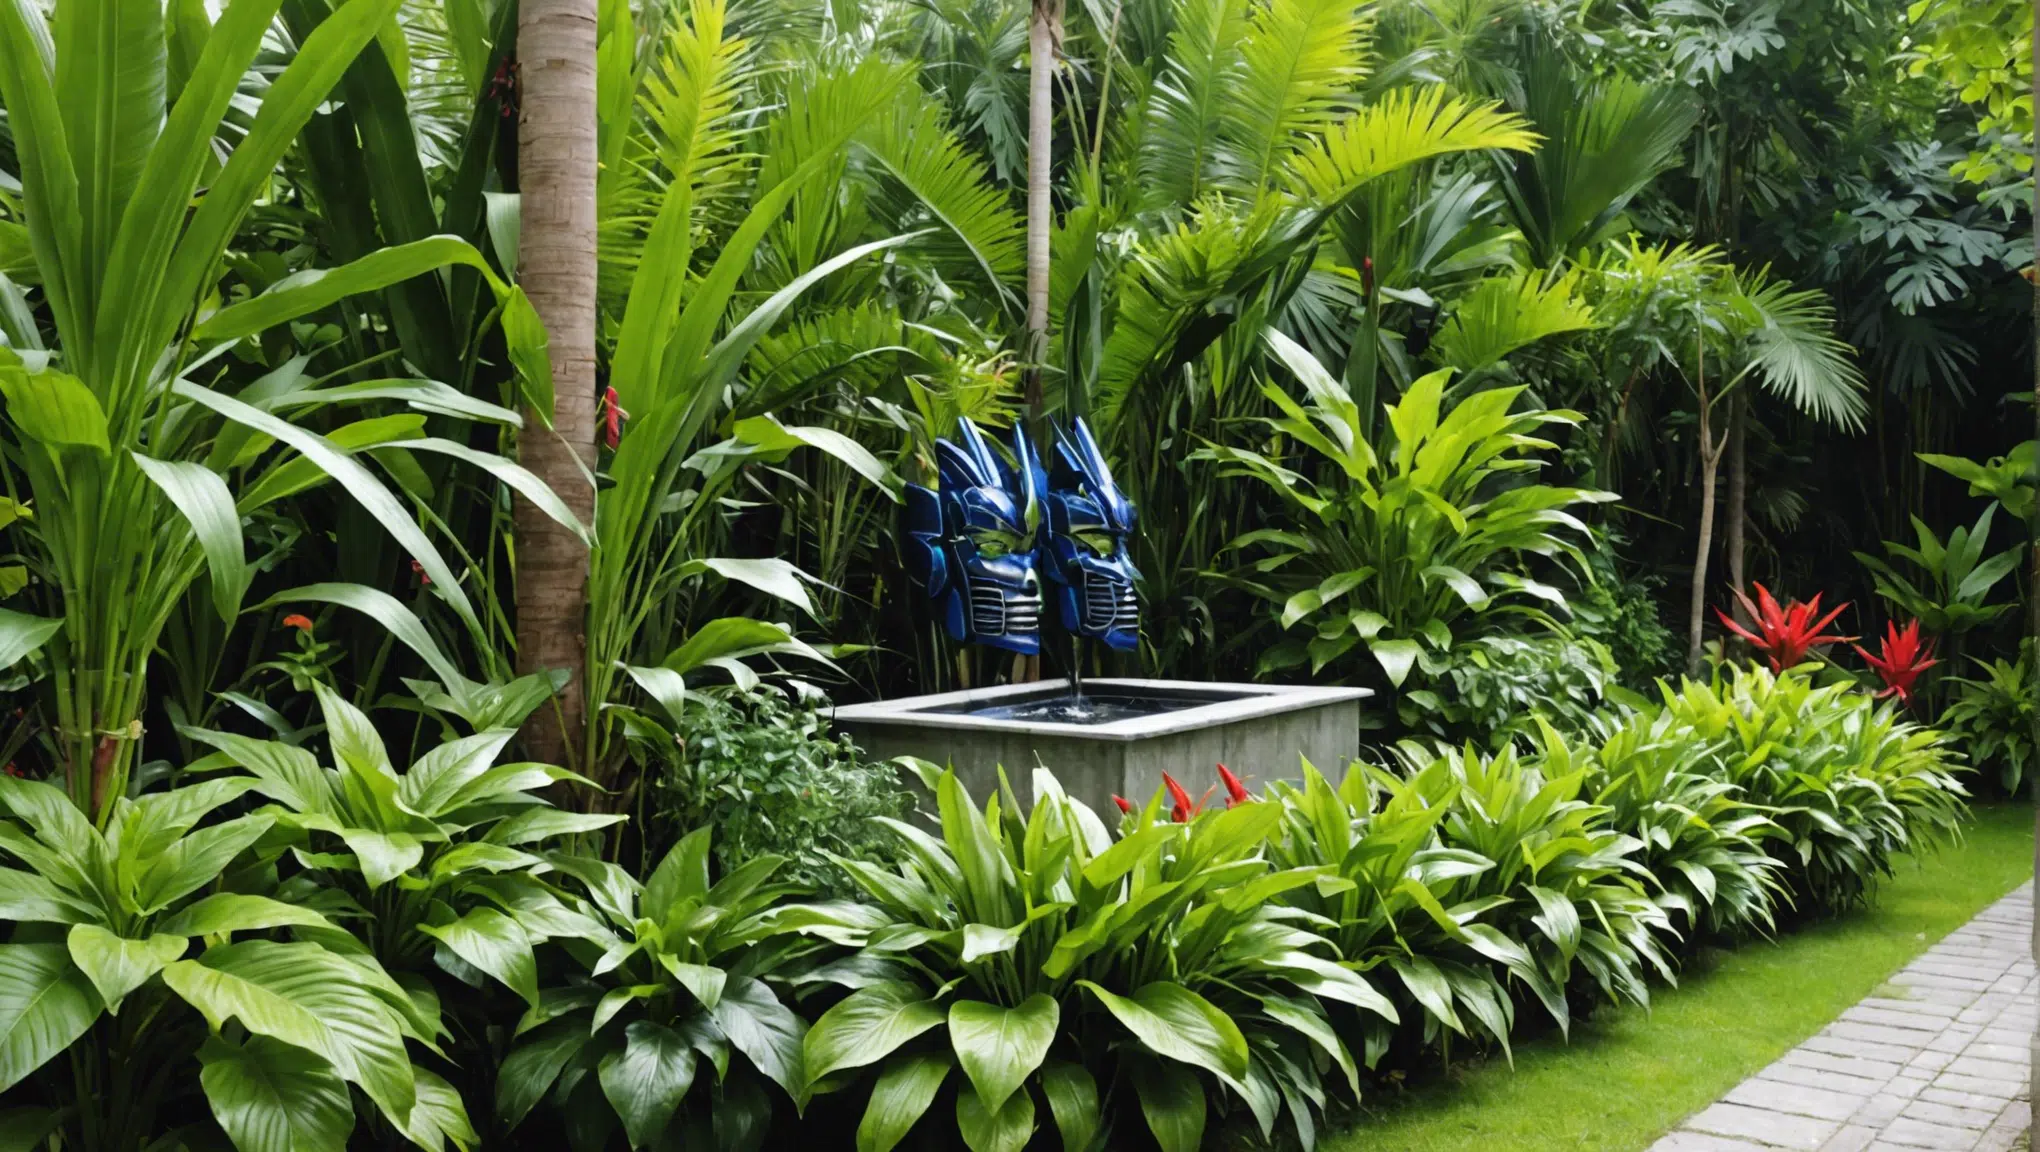 découvrez ces astuces simples pour transformer votre jardin en un magnifique paradis tropical et profiter d'un véritable havre de paix chez vous.